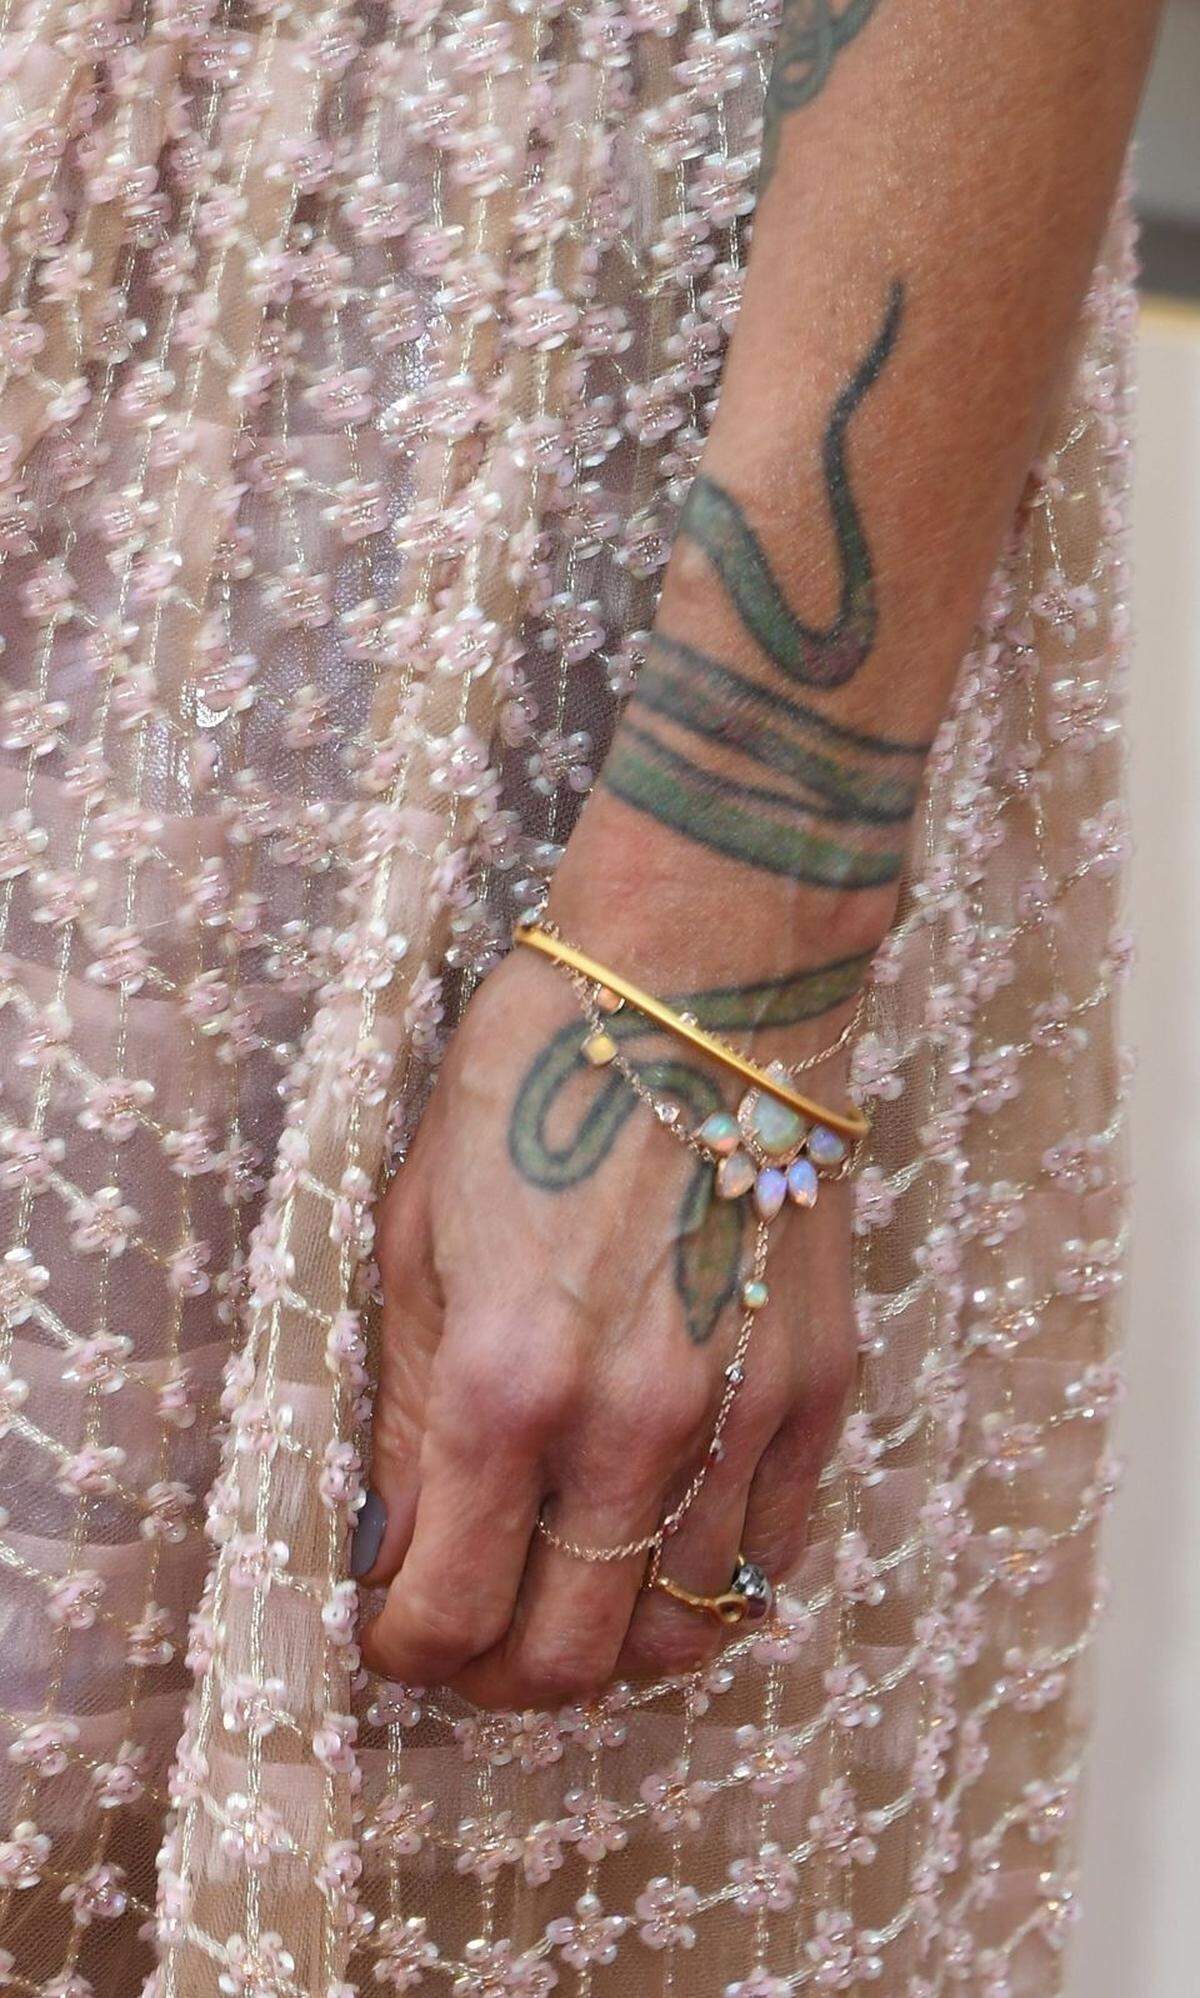 Tattoos waren auch zu sehen - hier zum Beispiel auf dem Arm von Schauspielerin Lisa Bonet.